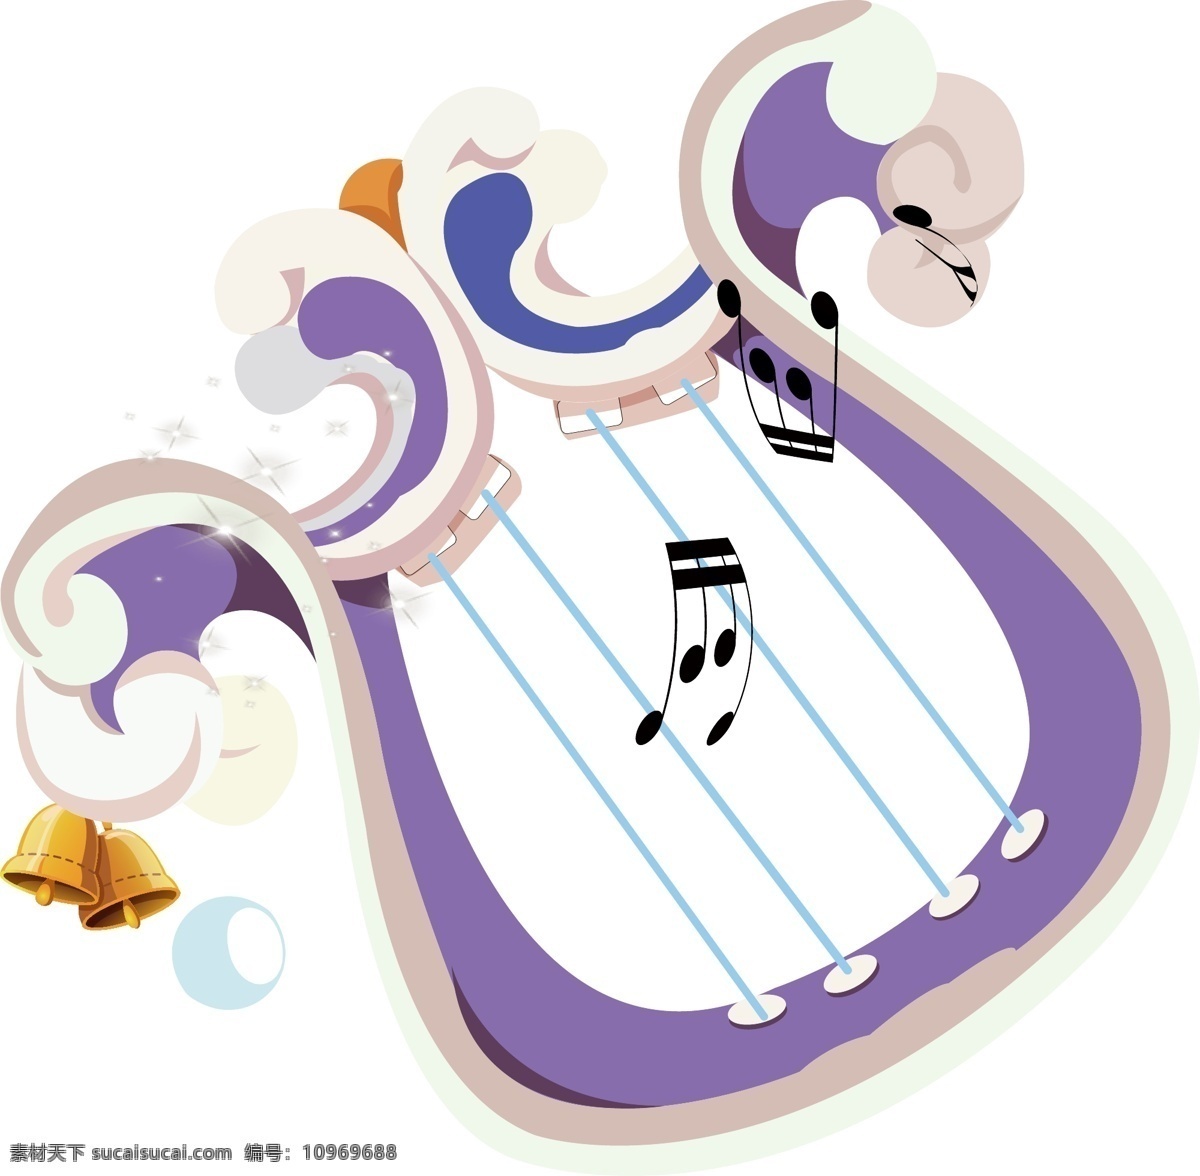 手绘 卡通 可爱 动物 造型 竖琴 古典乐器 古代乐器 弹弦乐器 拔弦乐器 弹拨乐器 复古琴 动物造型